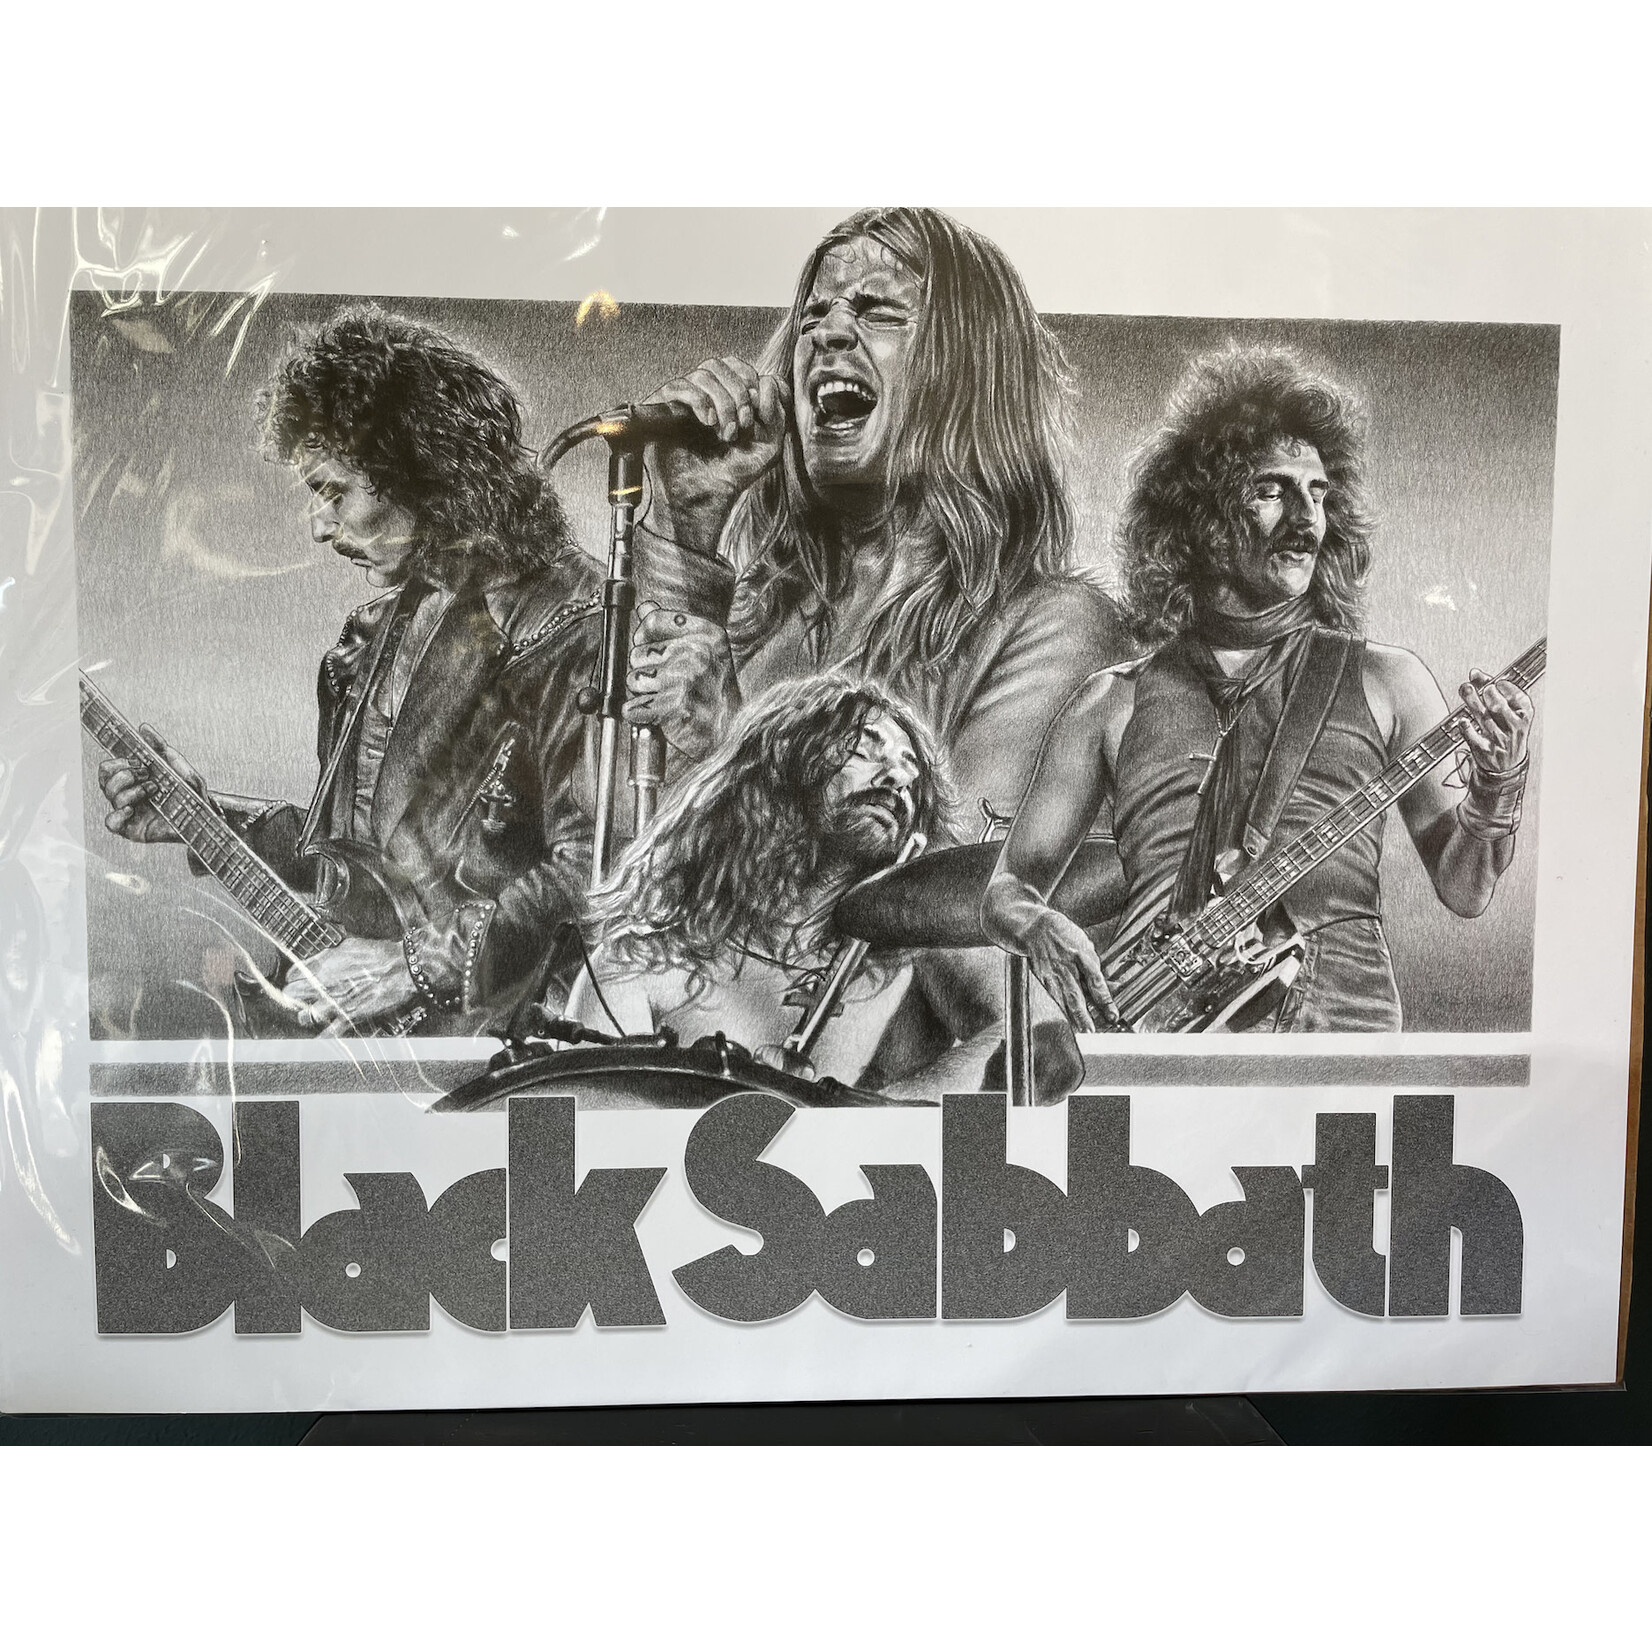 Rock Your Walls Off Black Sabbath (Poster) [18"x24"]